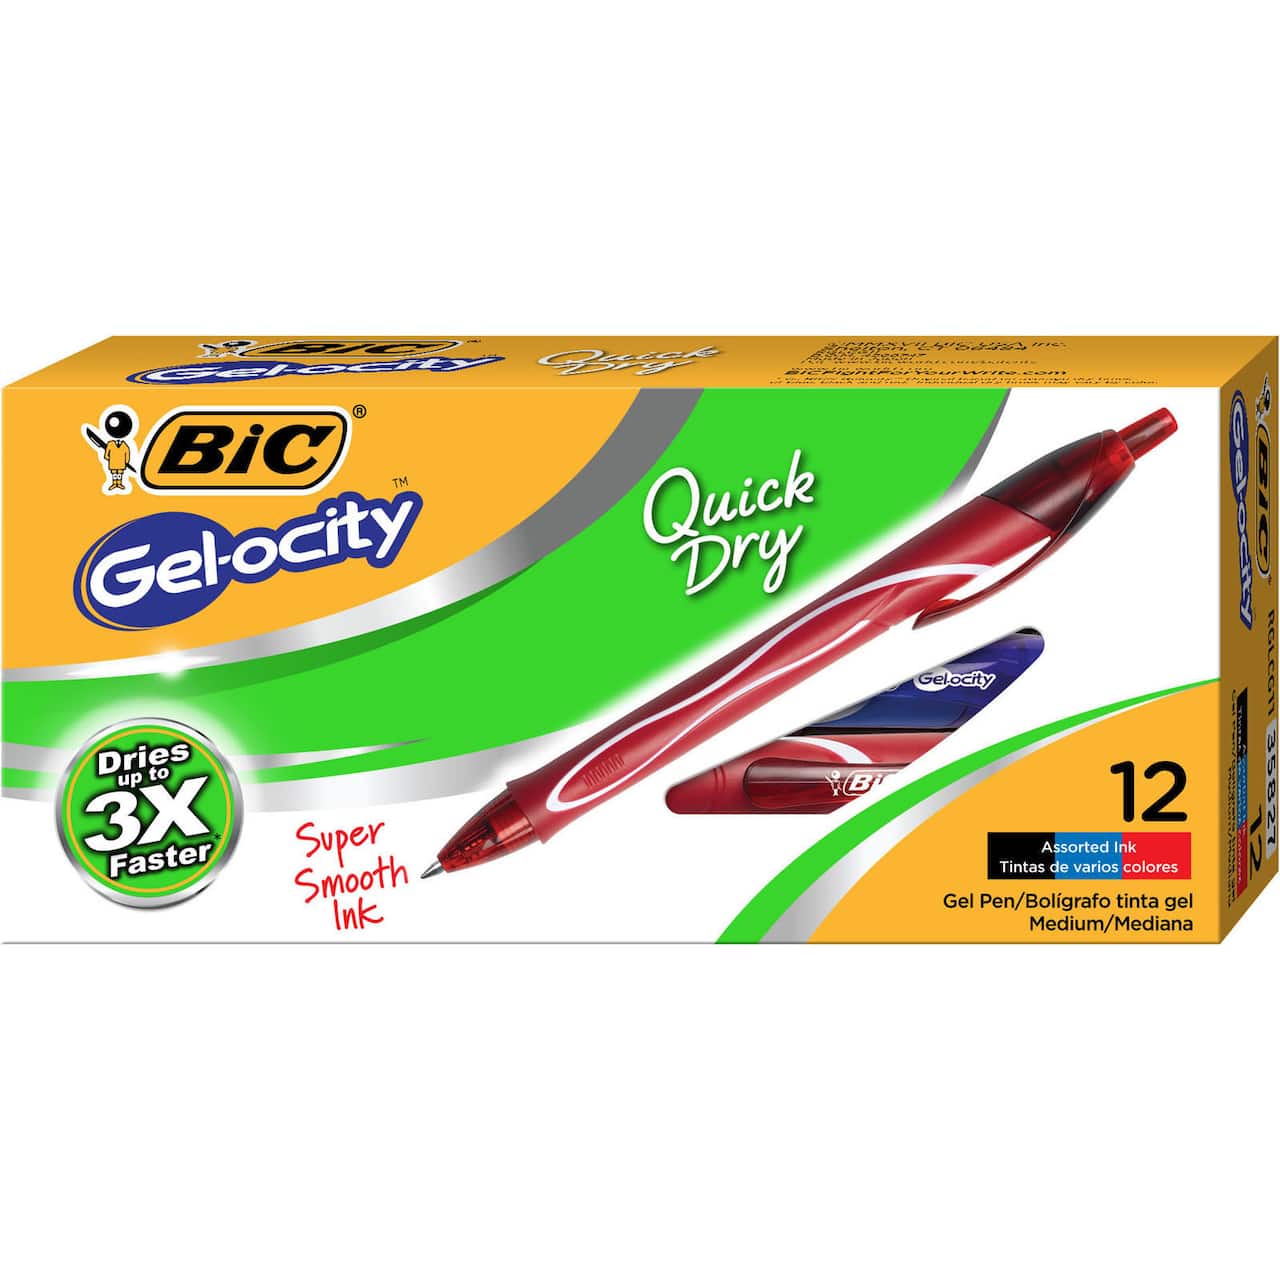 BIC® Gel-ocity® Quick Dry Retractable Gel Pens